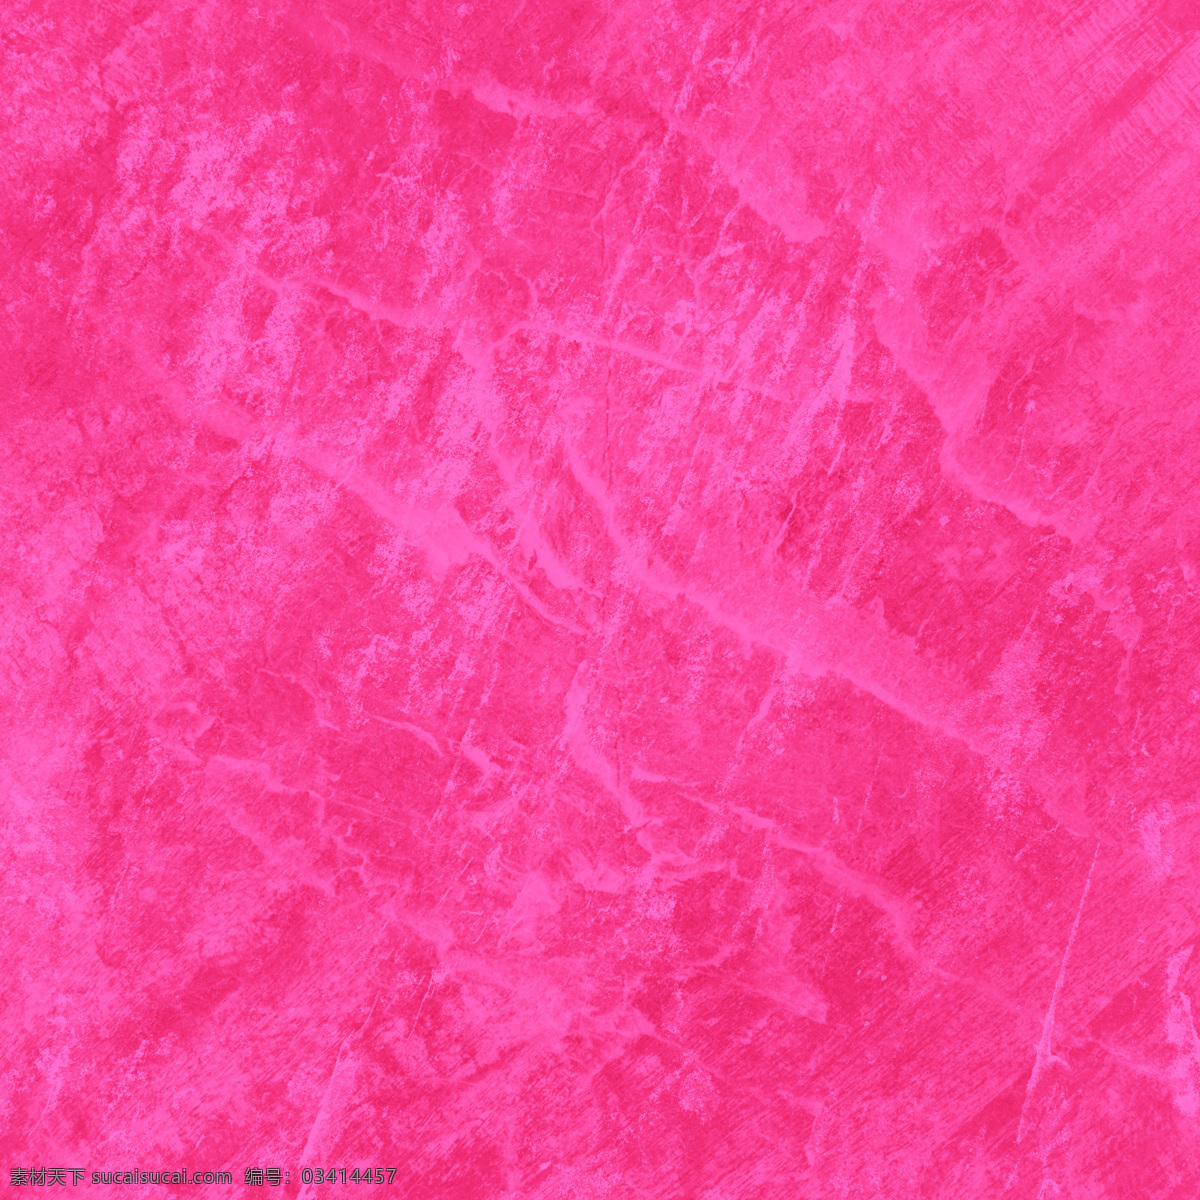 粉色底纹 扎染 粉红 粉红扎染 背景 抽象背景 粉 粉色 底纹 大理石纹 底纹边框 抽象底纹